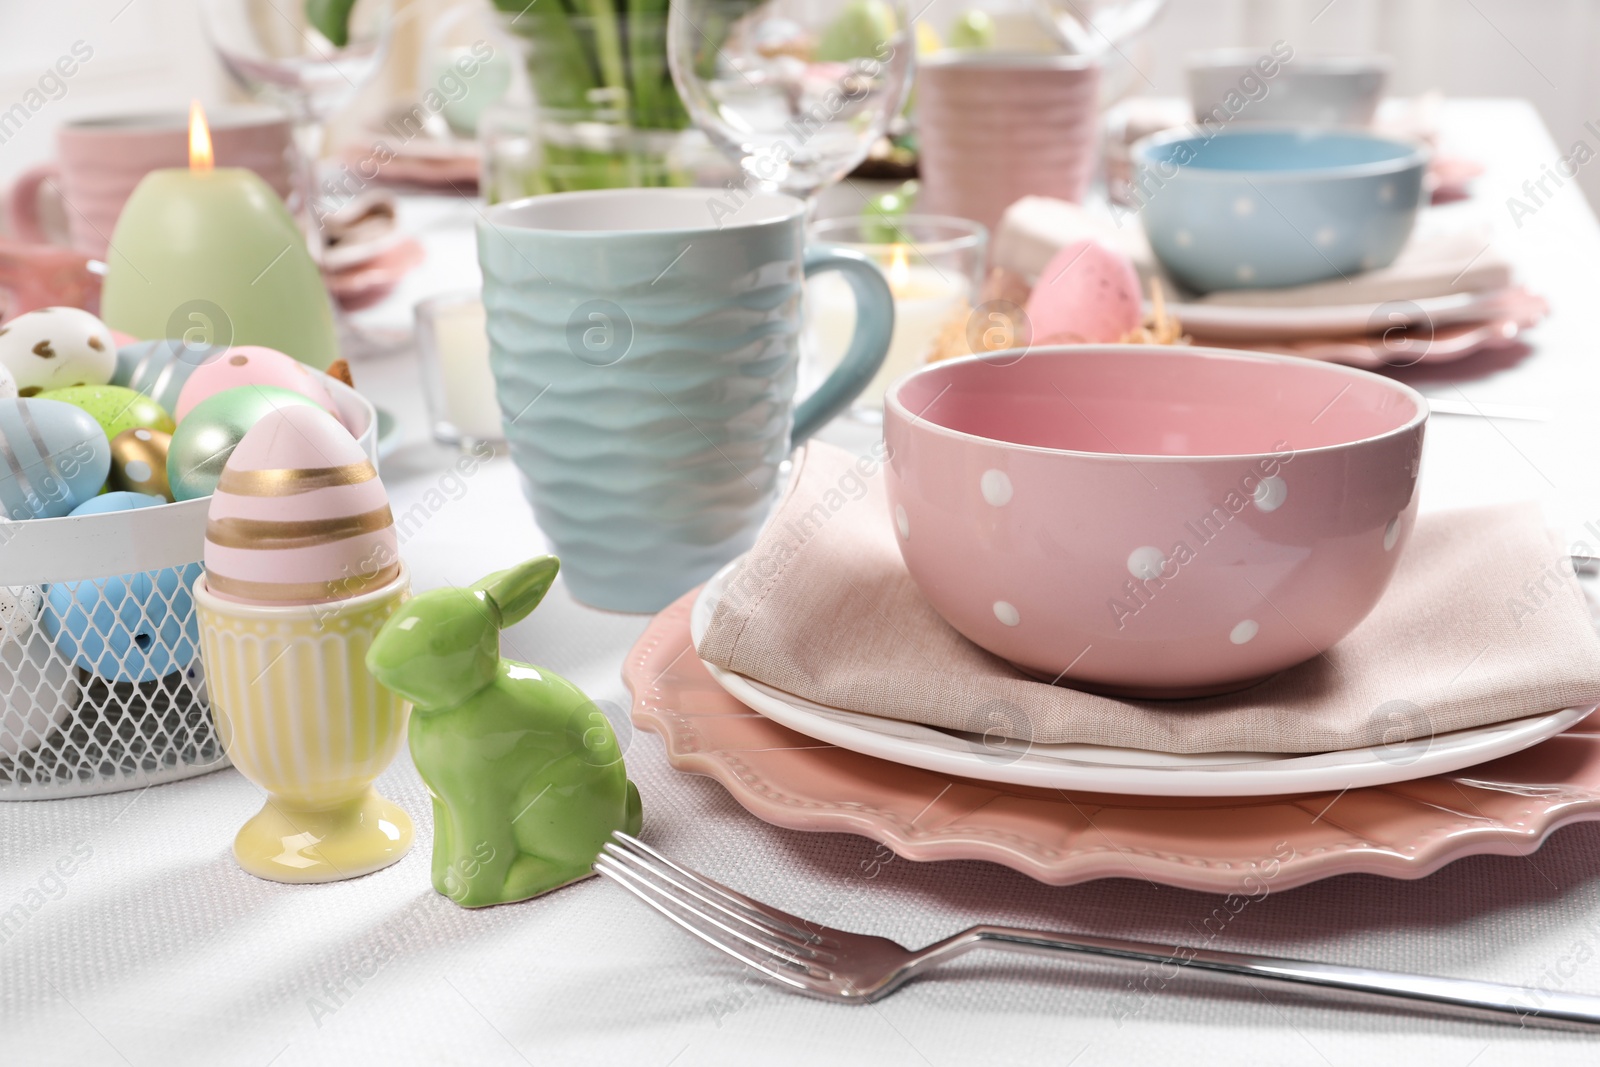 Photo of Festive table setting with elegant dishware. Easter celebration